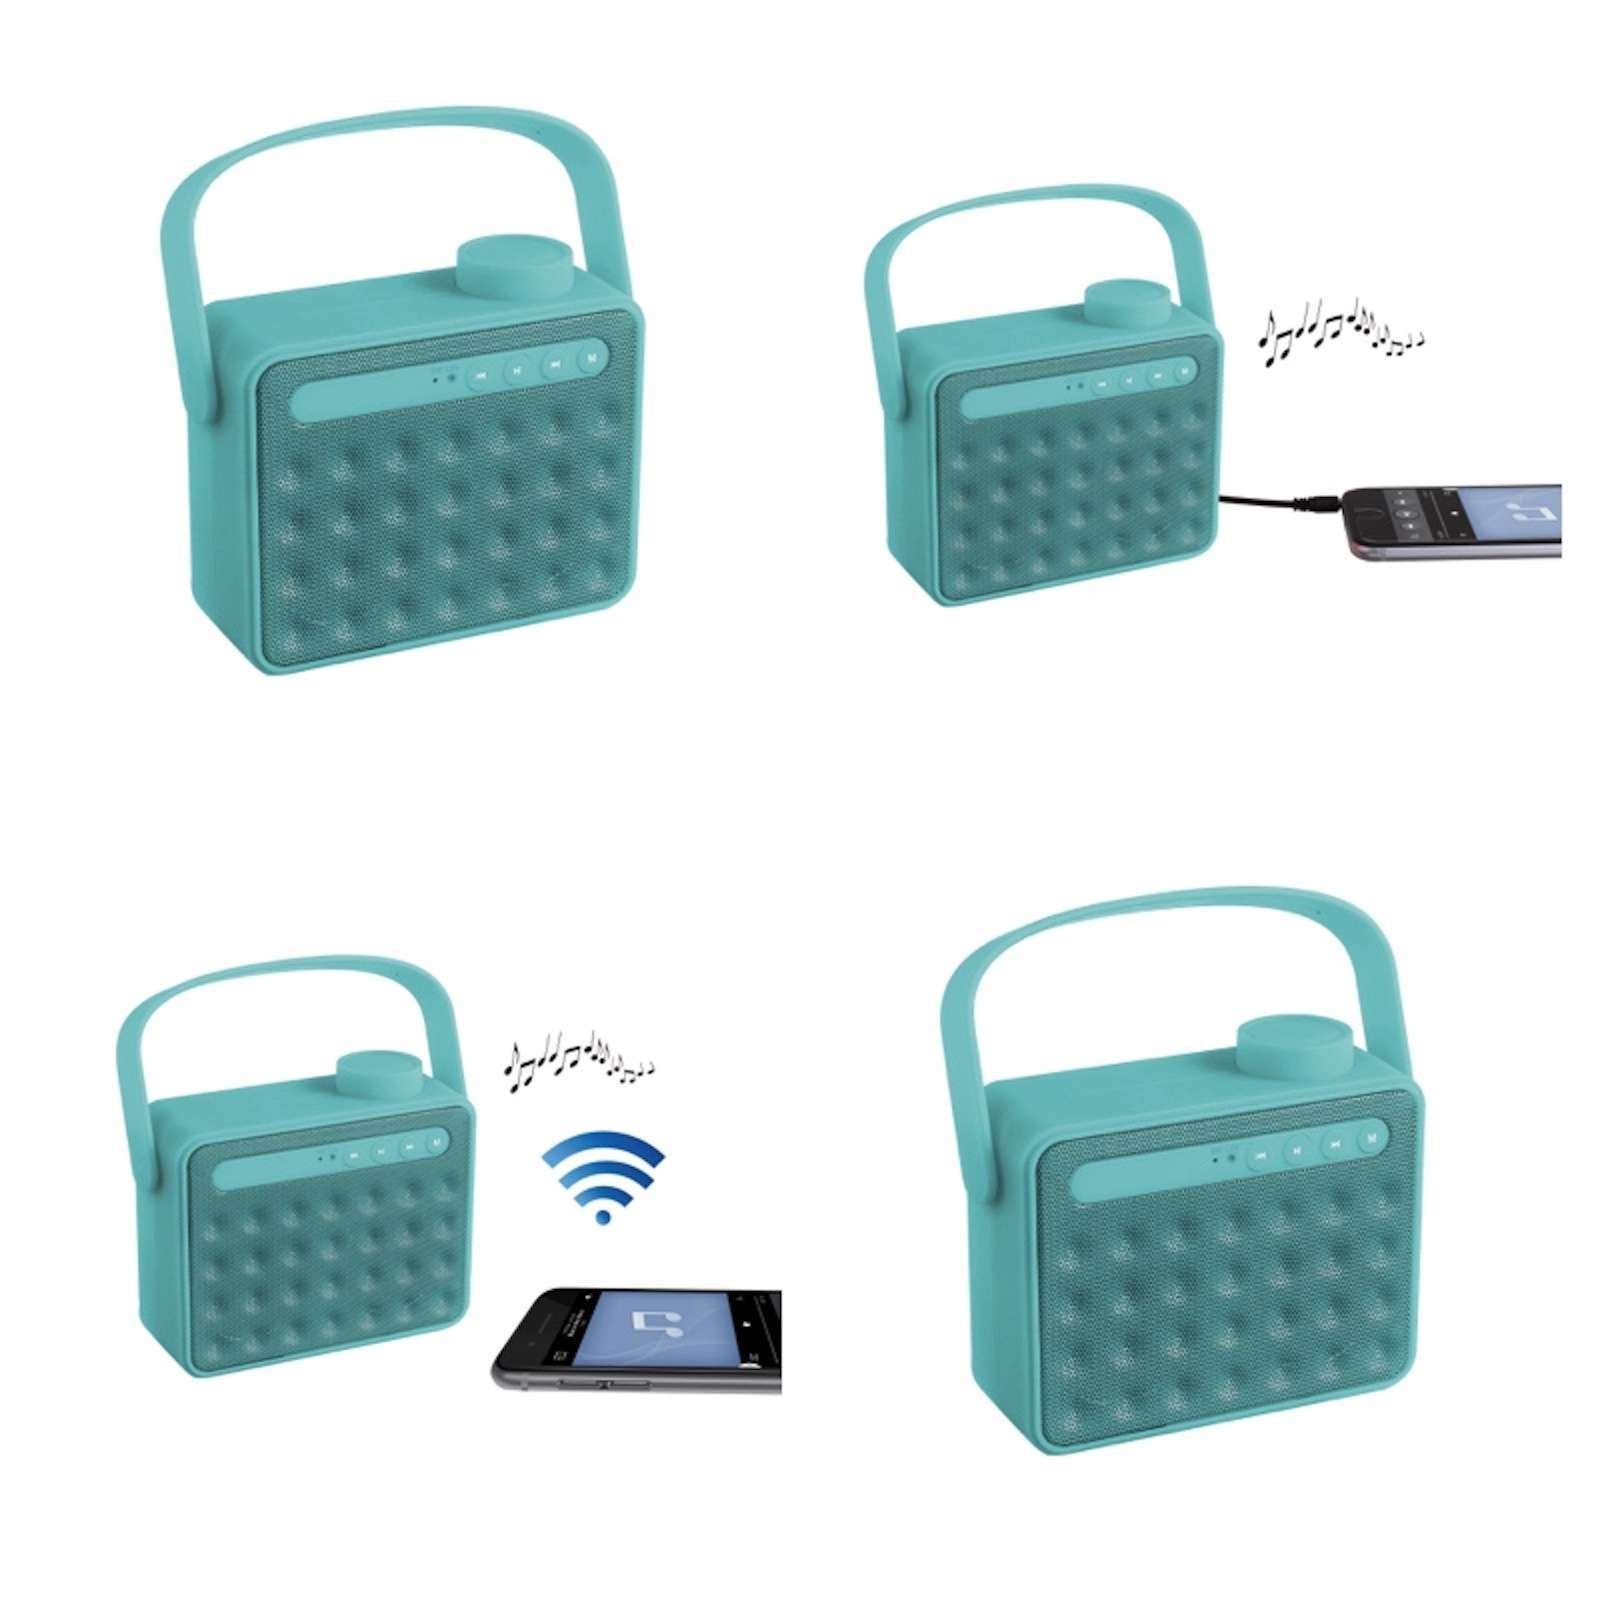 LIVOO ClipSonic Lautsprecher tragbar mit und Bluetooth türkis TES142B Radio Lautsprecher